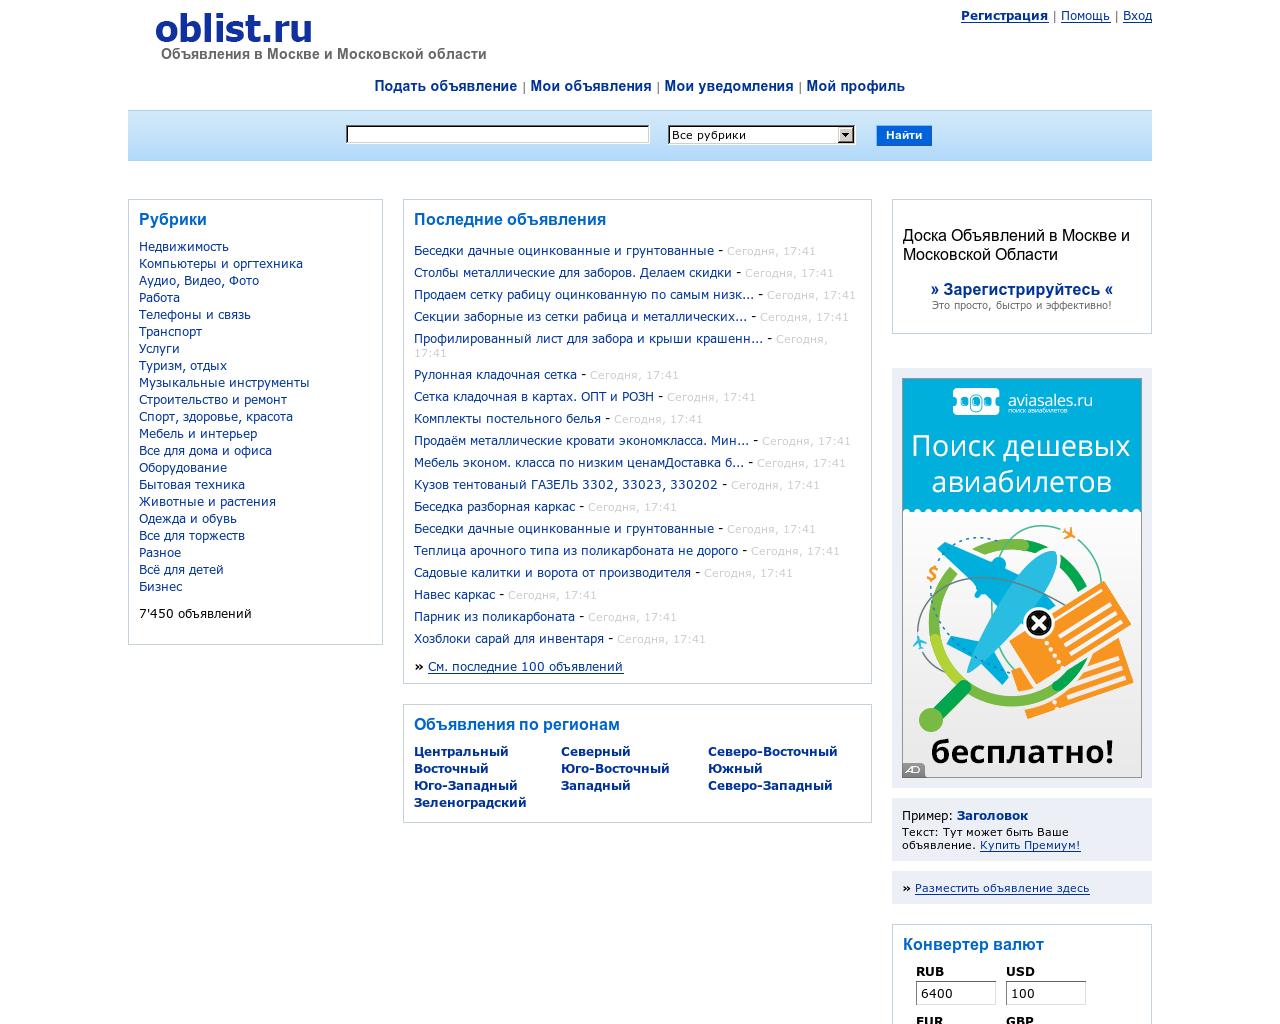 Изображение сайта oblist.ru в разрешении 1280x1024